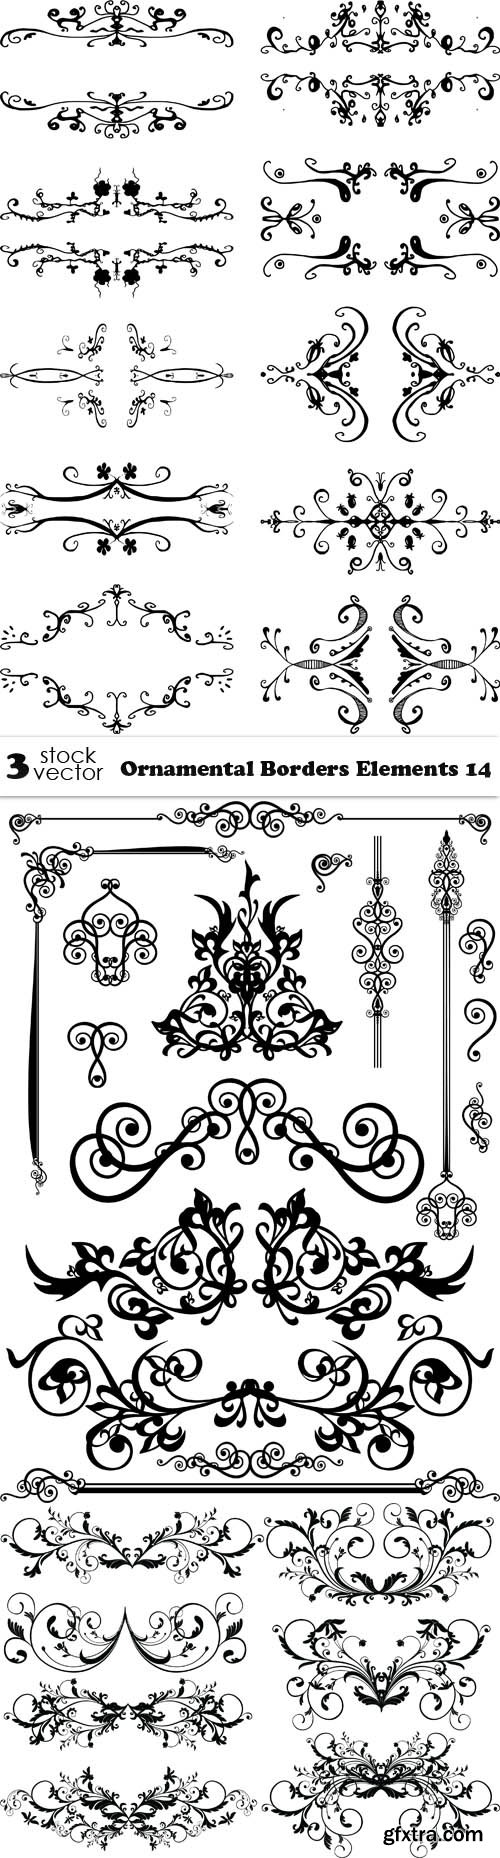 Vectors - Ornamental Borders Elements 14